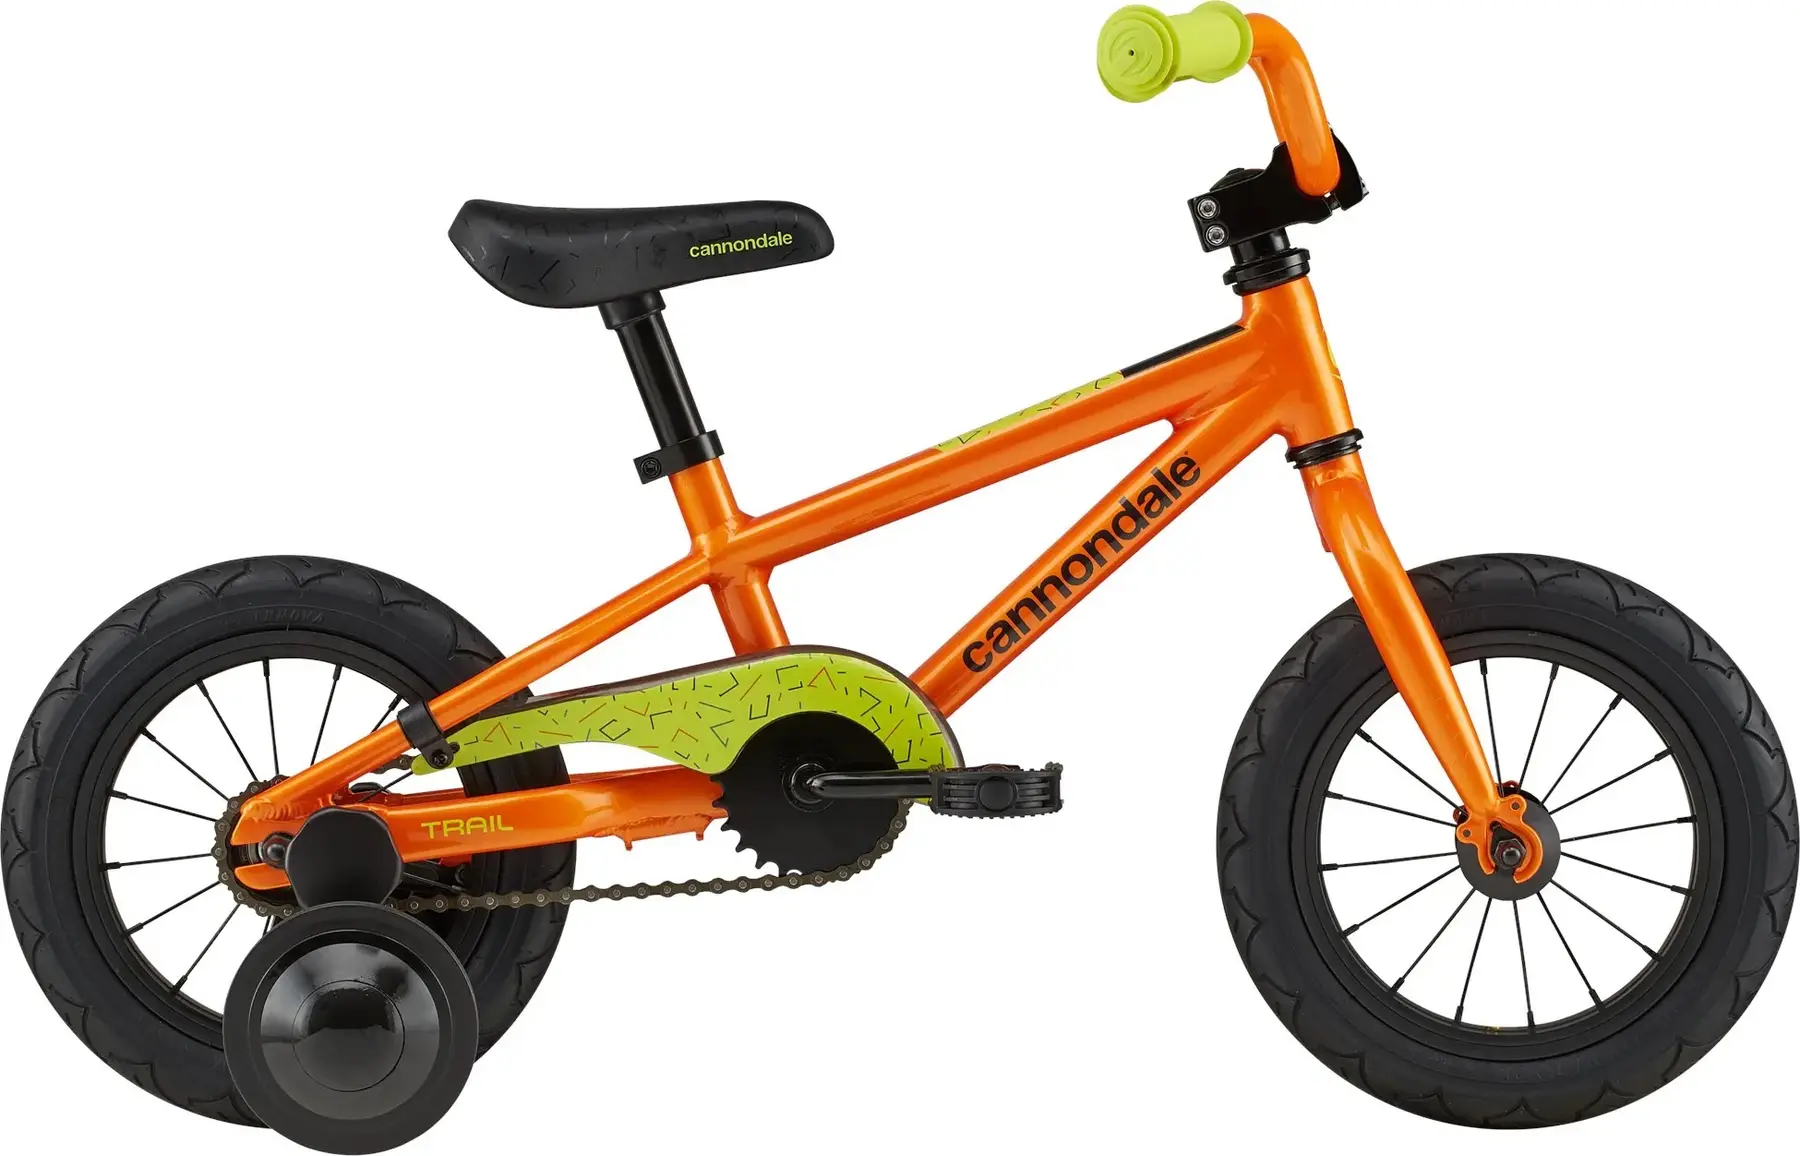 Удобные и надежные детские велосипеды Cannondale для города